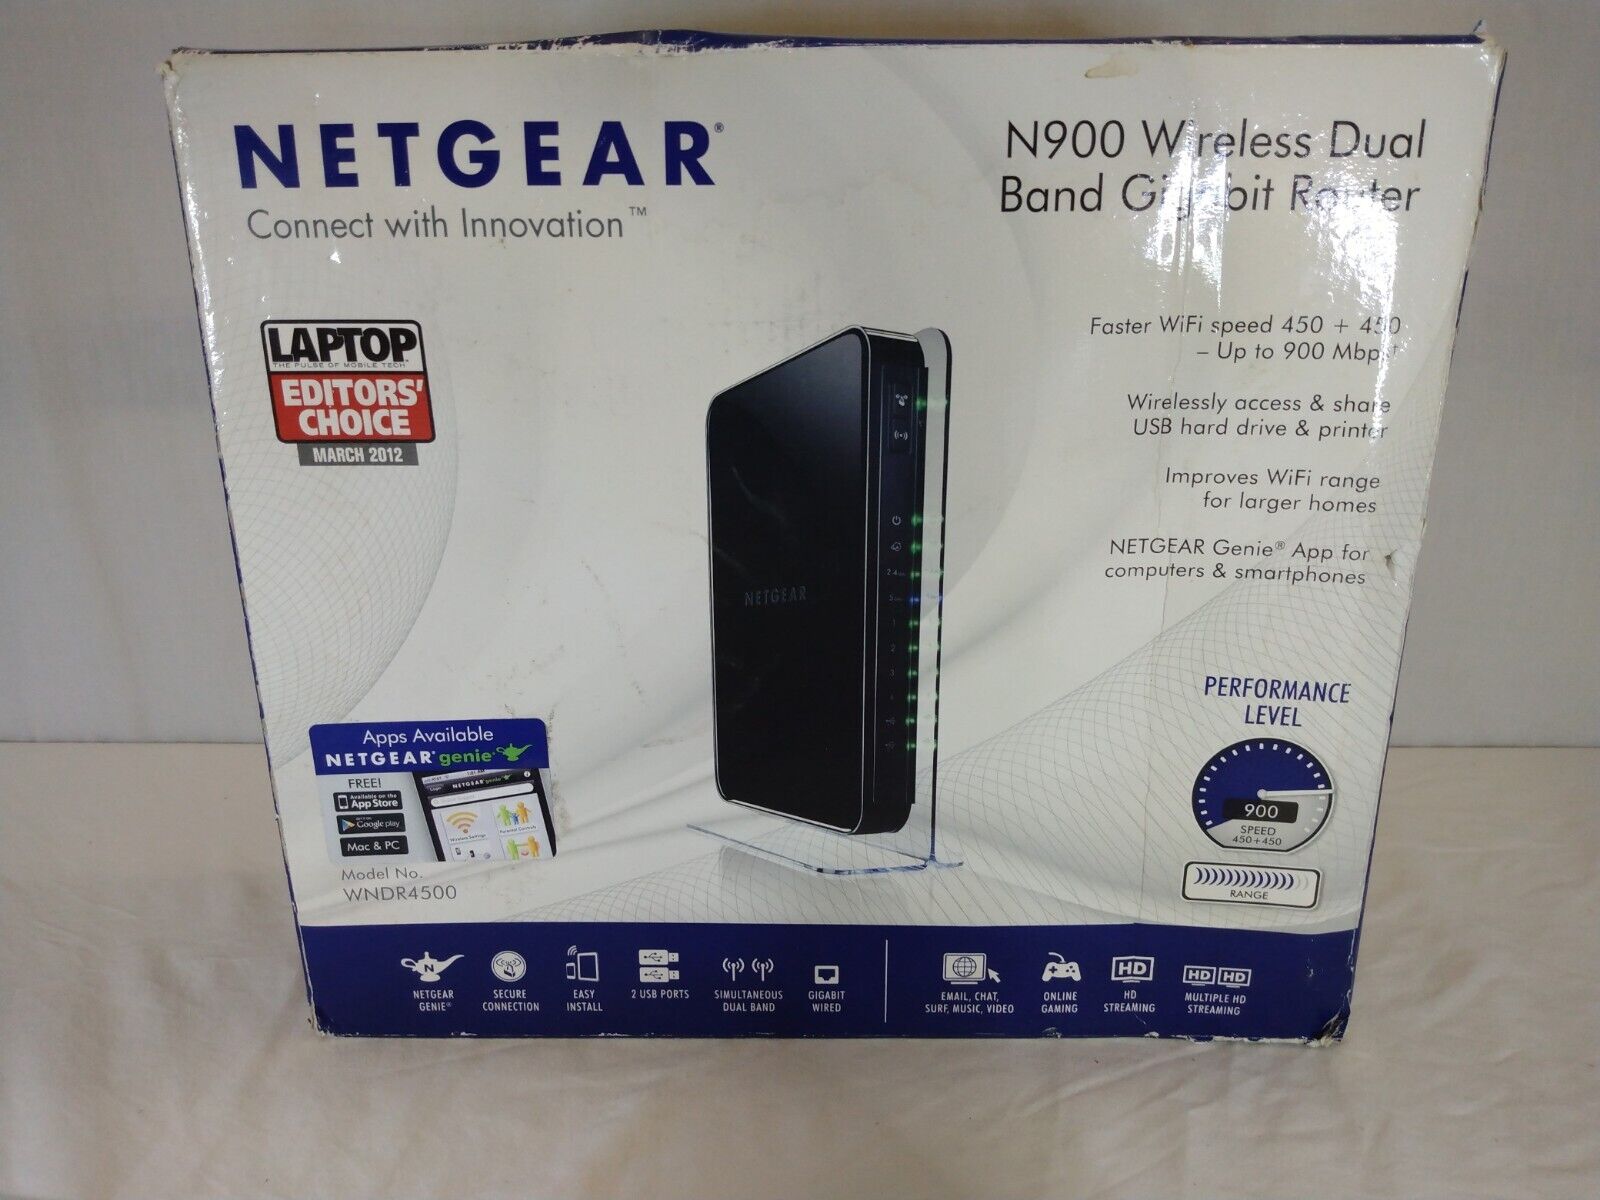 Netgear N900 450 Mbps 4-Port Gigabit Wireless Router (WNDR4500) New - Open Box